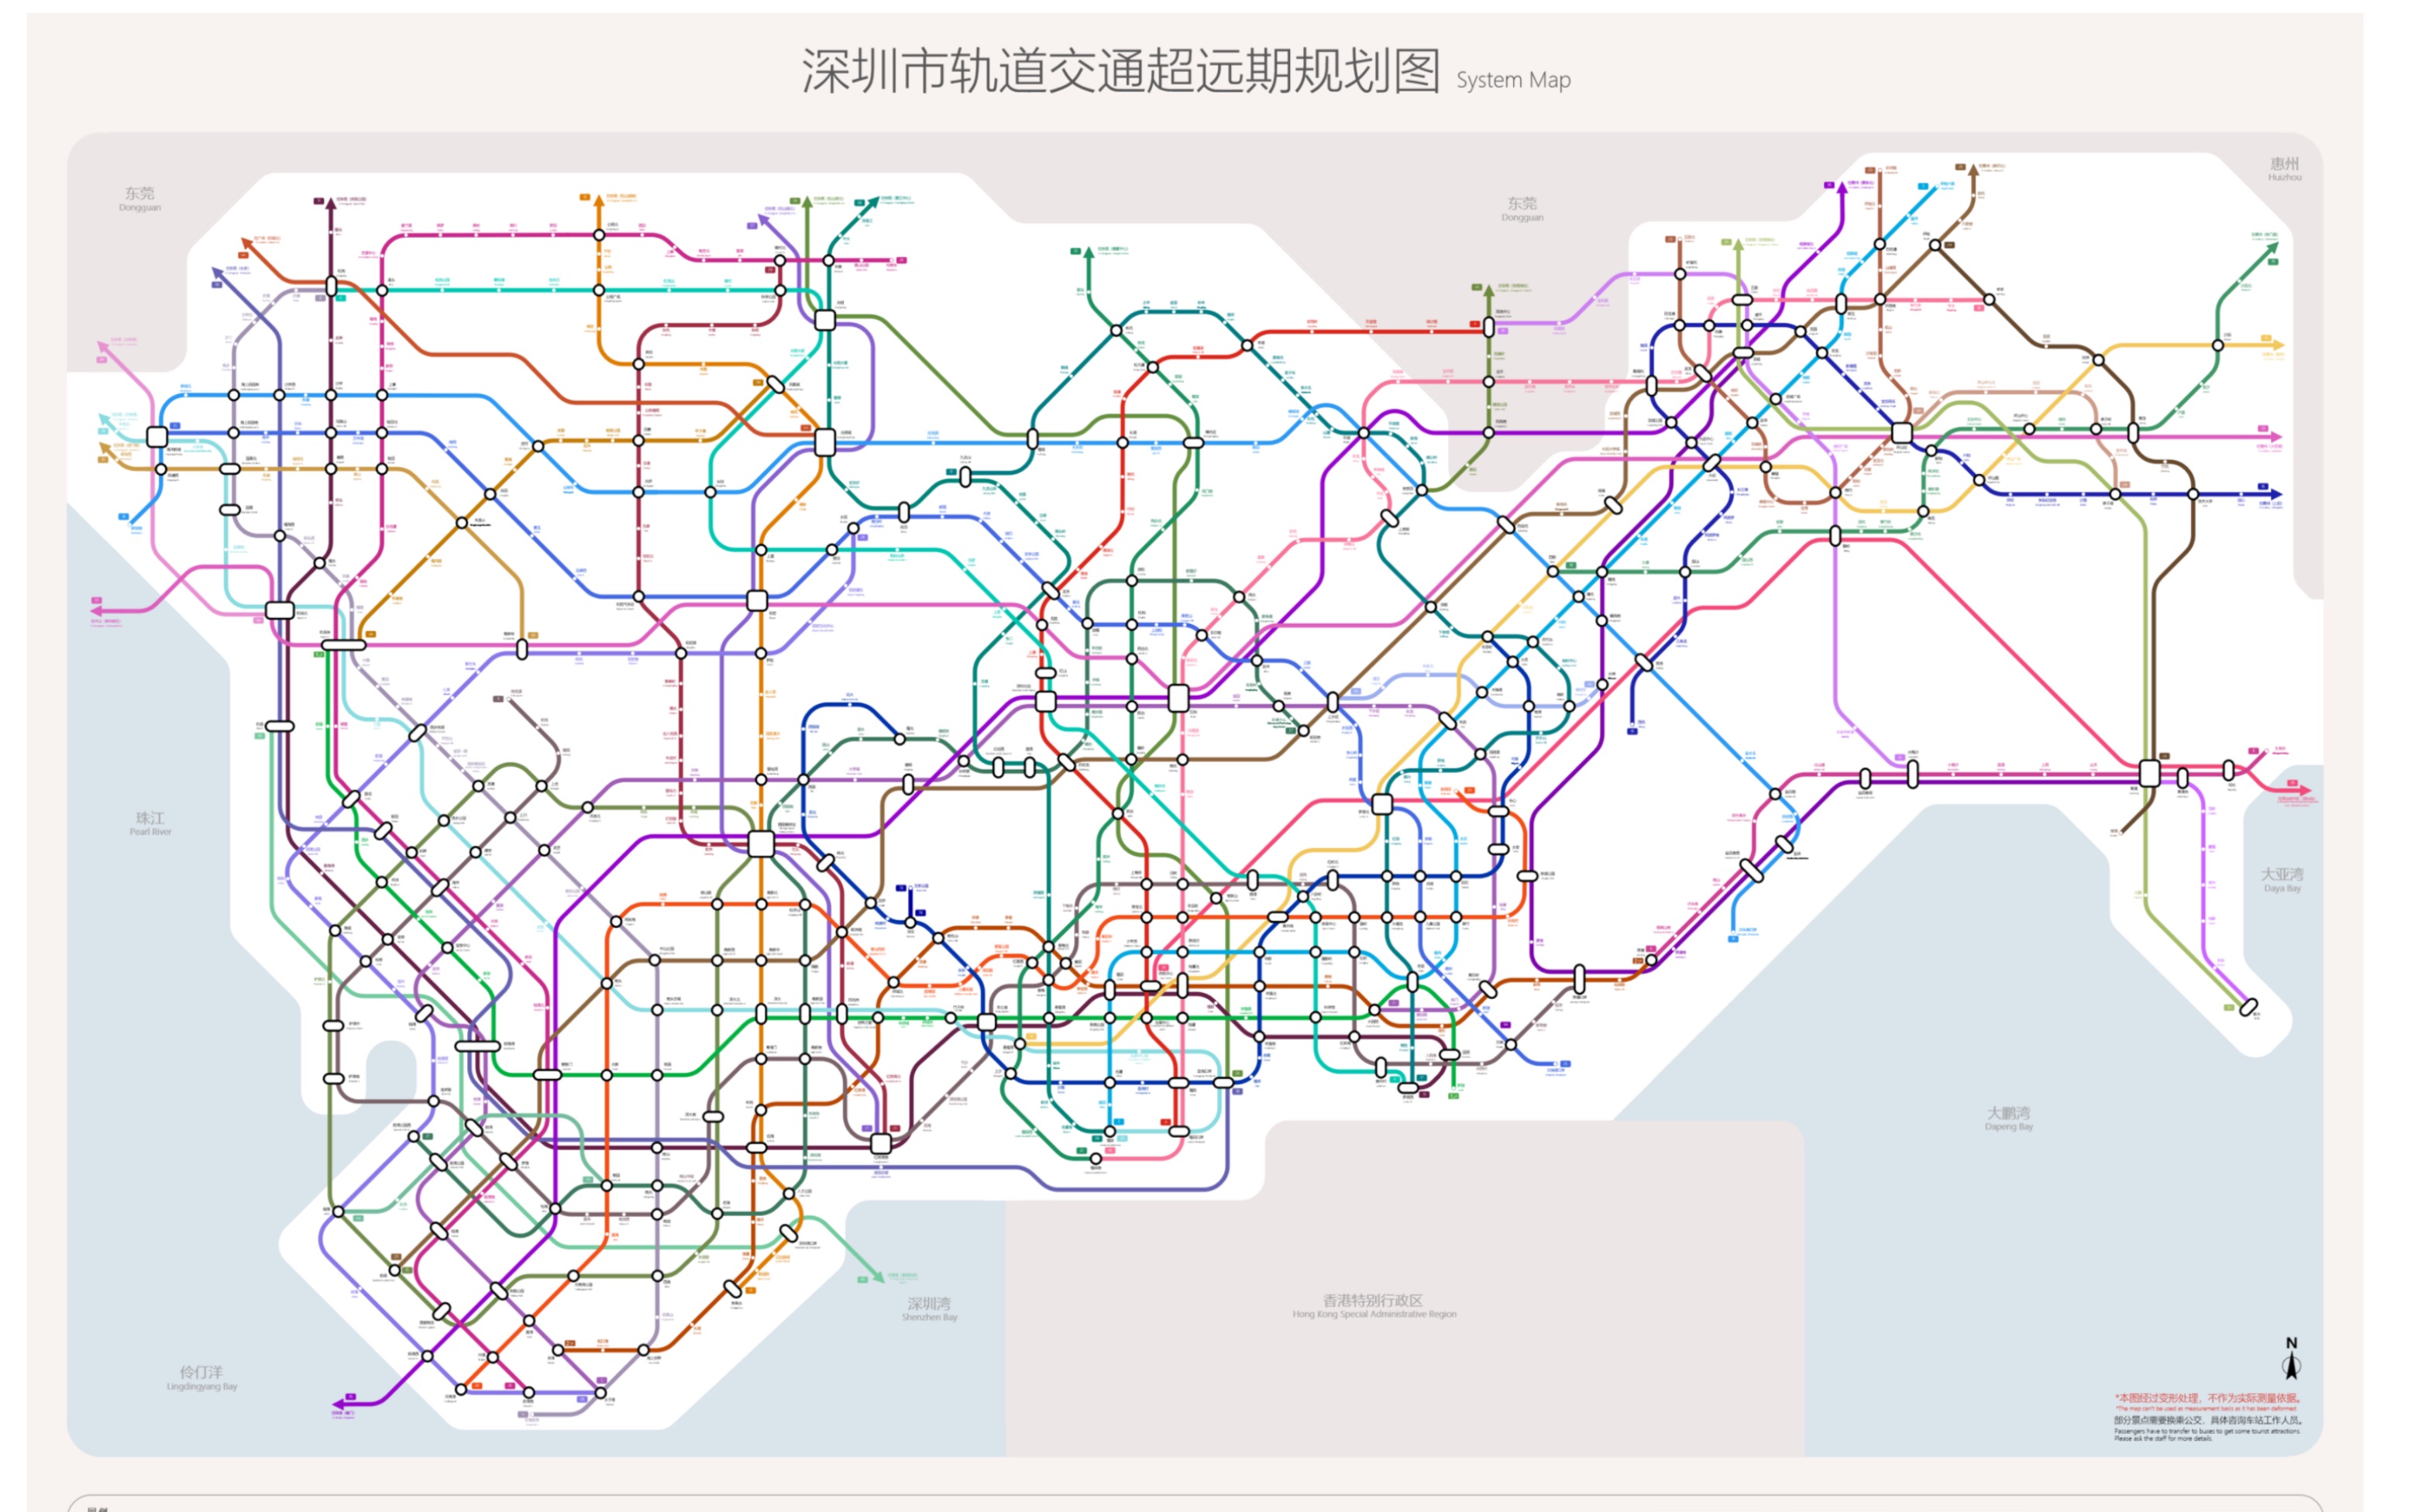 自制深圳地铁远期规划图(部分yy)